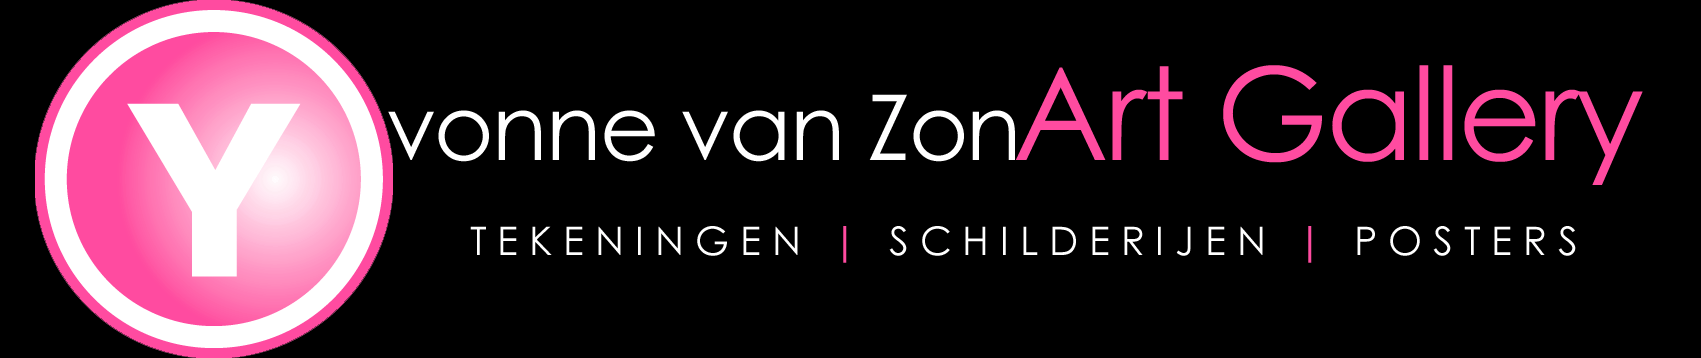 Yvonne van Zon